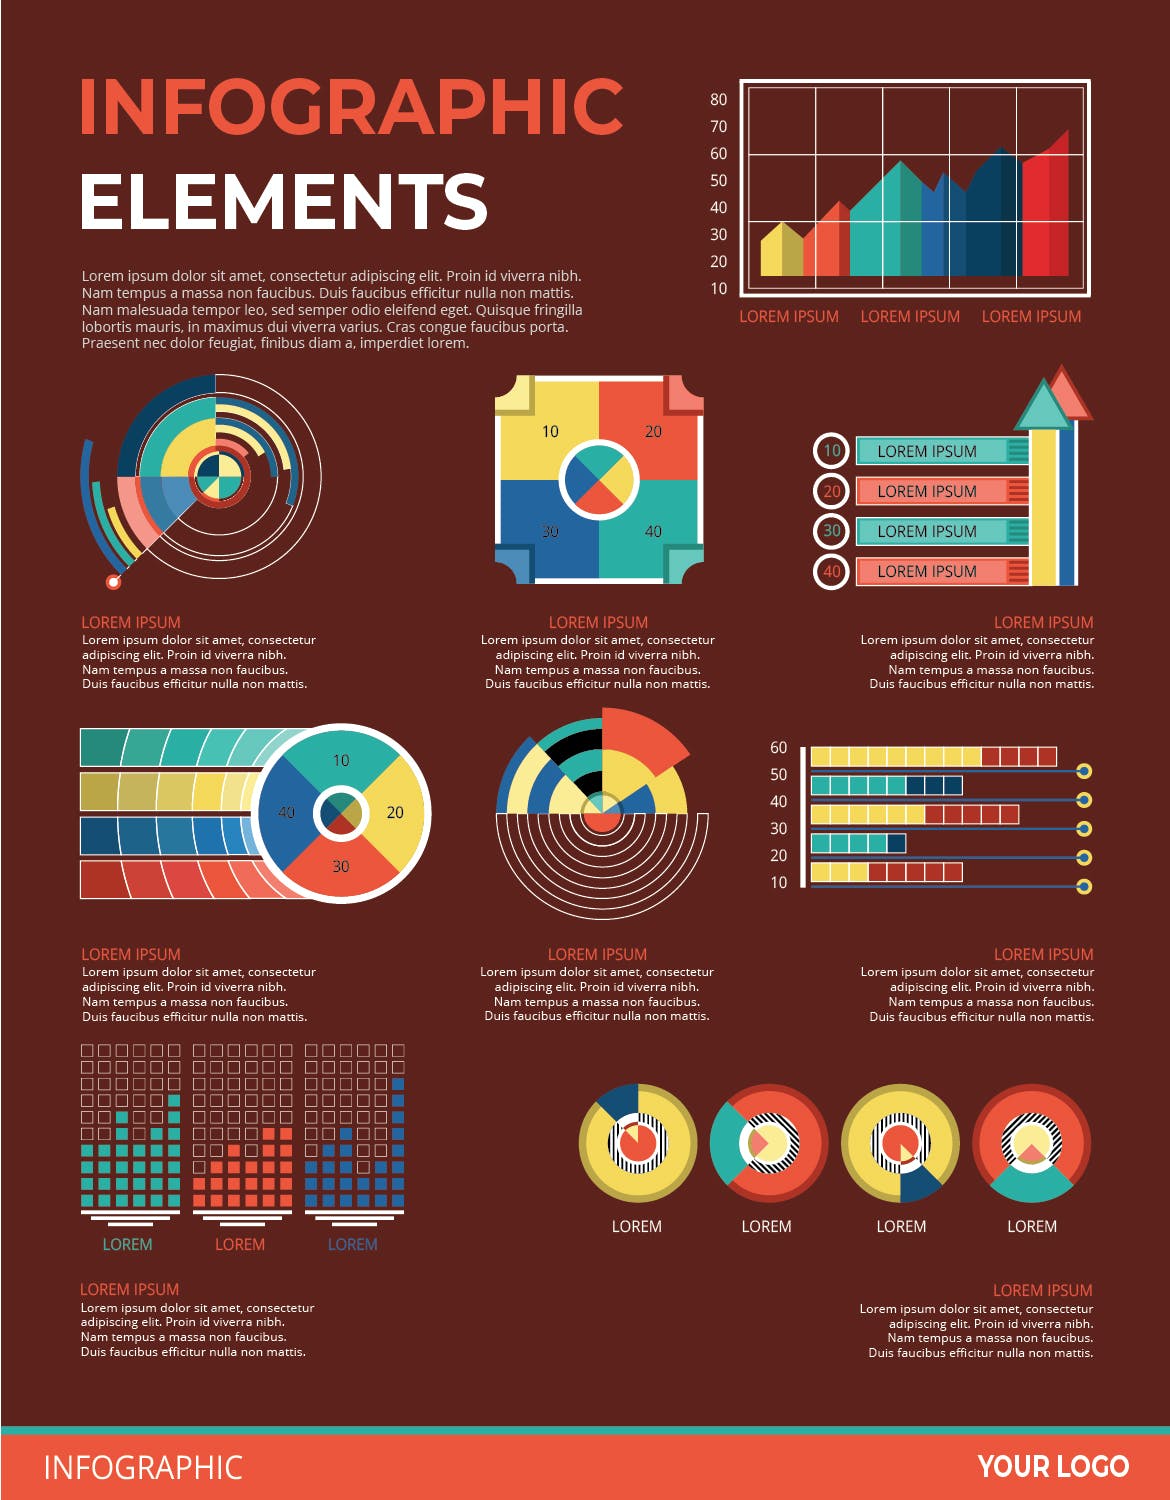 可视化数据信息图表元素素材v141 Infographic Elements Ver. 141 幻灯图表 第3张